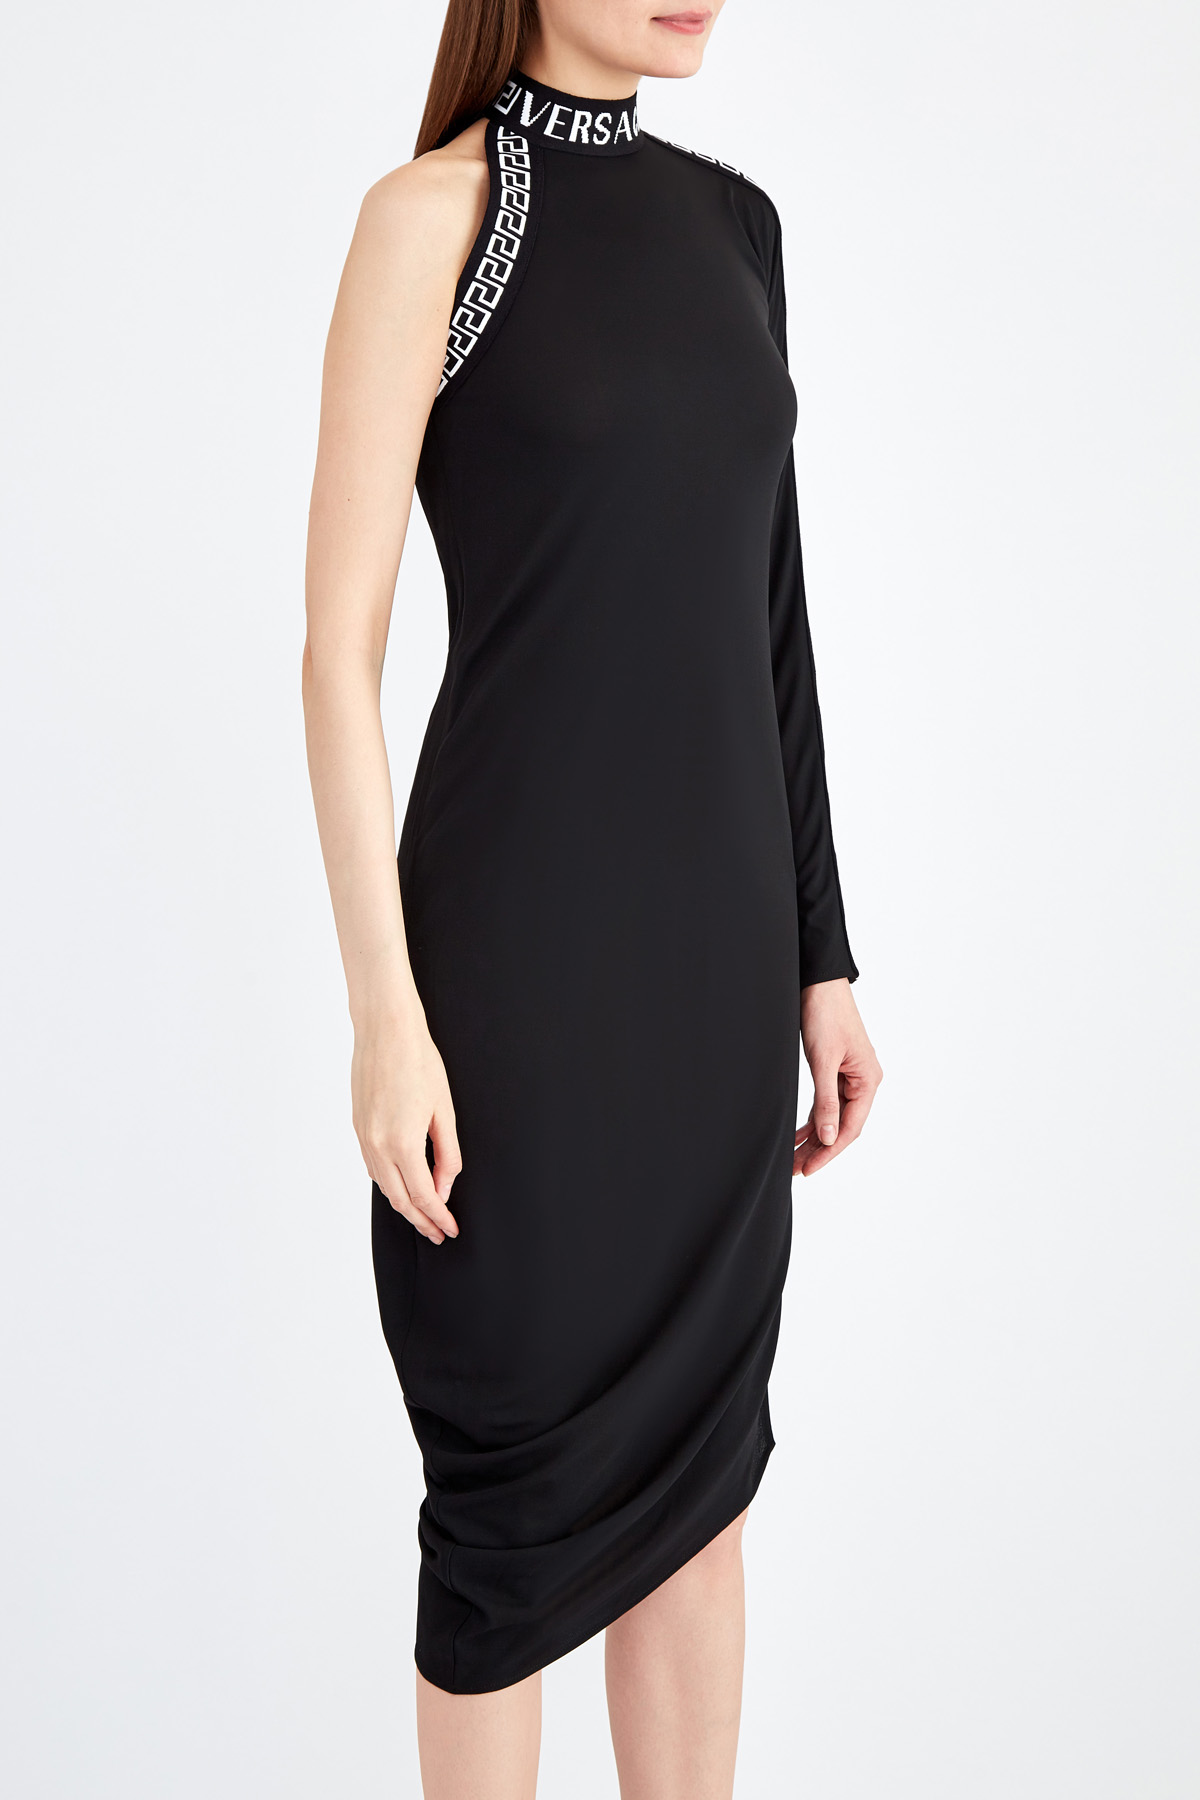 Асимметричное платье в греческом стиле с мотивом Greca и монограммой VERSACE, цвет черный, размер 40 - фото 4